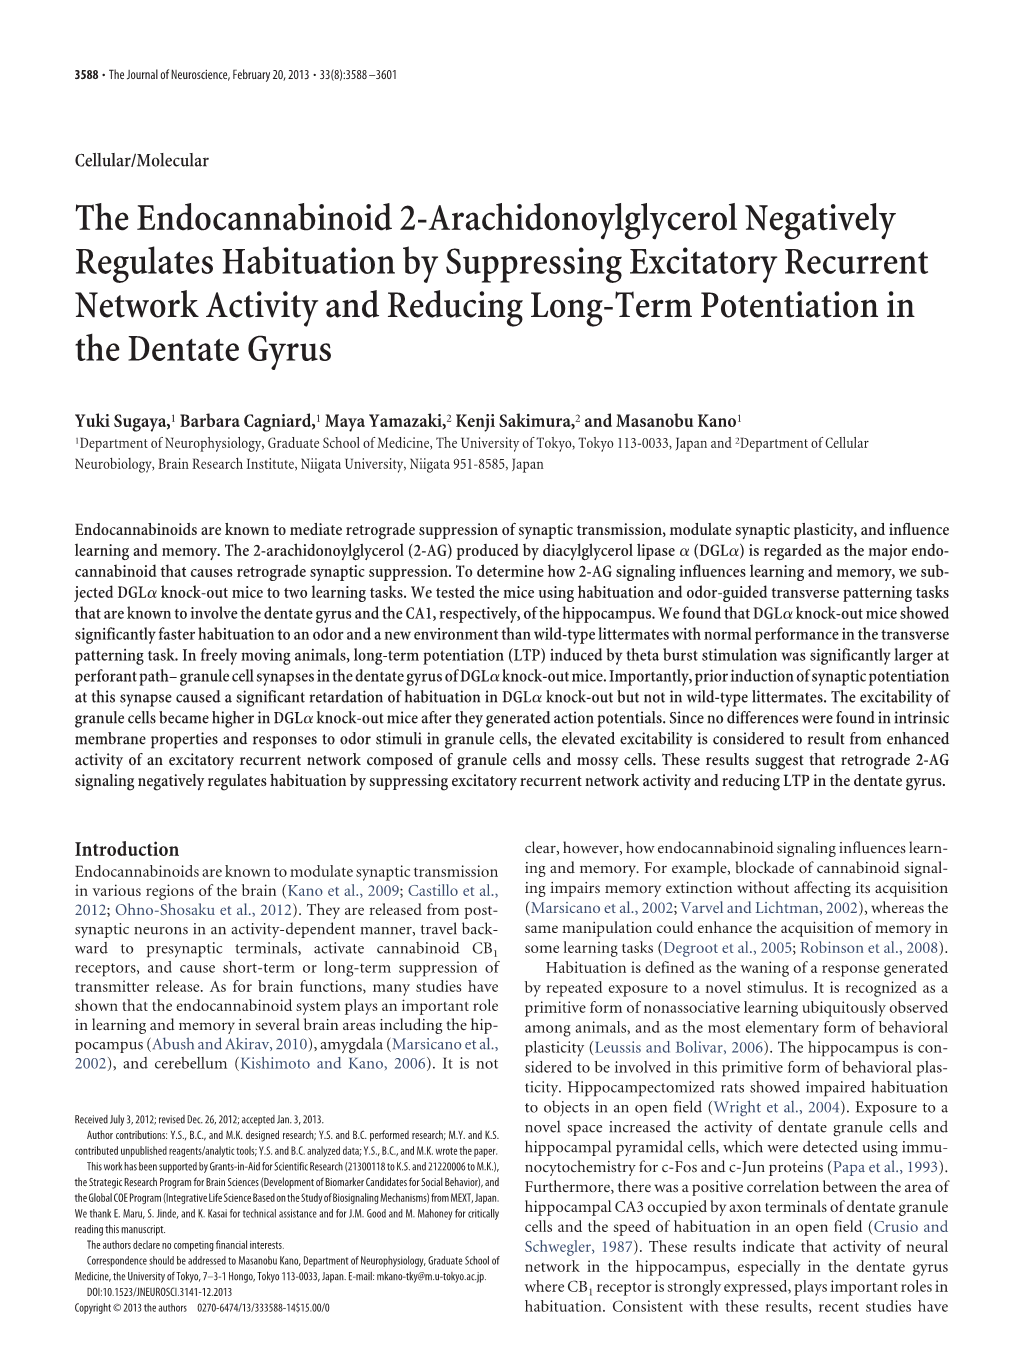 The Endocannabinoid 2-Arachidonoylglycerol Negatively Regulates Habituation by Suppressing Excitatory Recurrent Network Activity